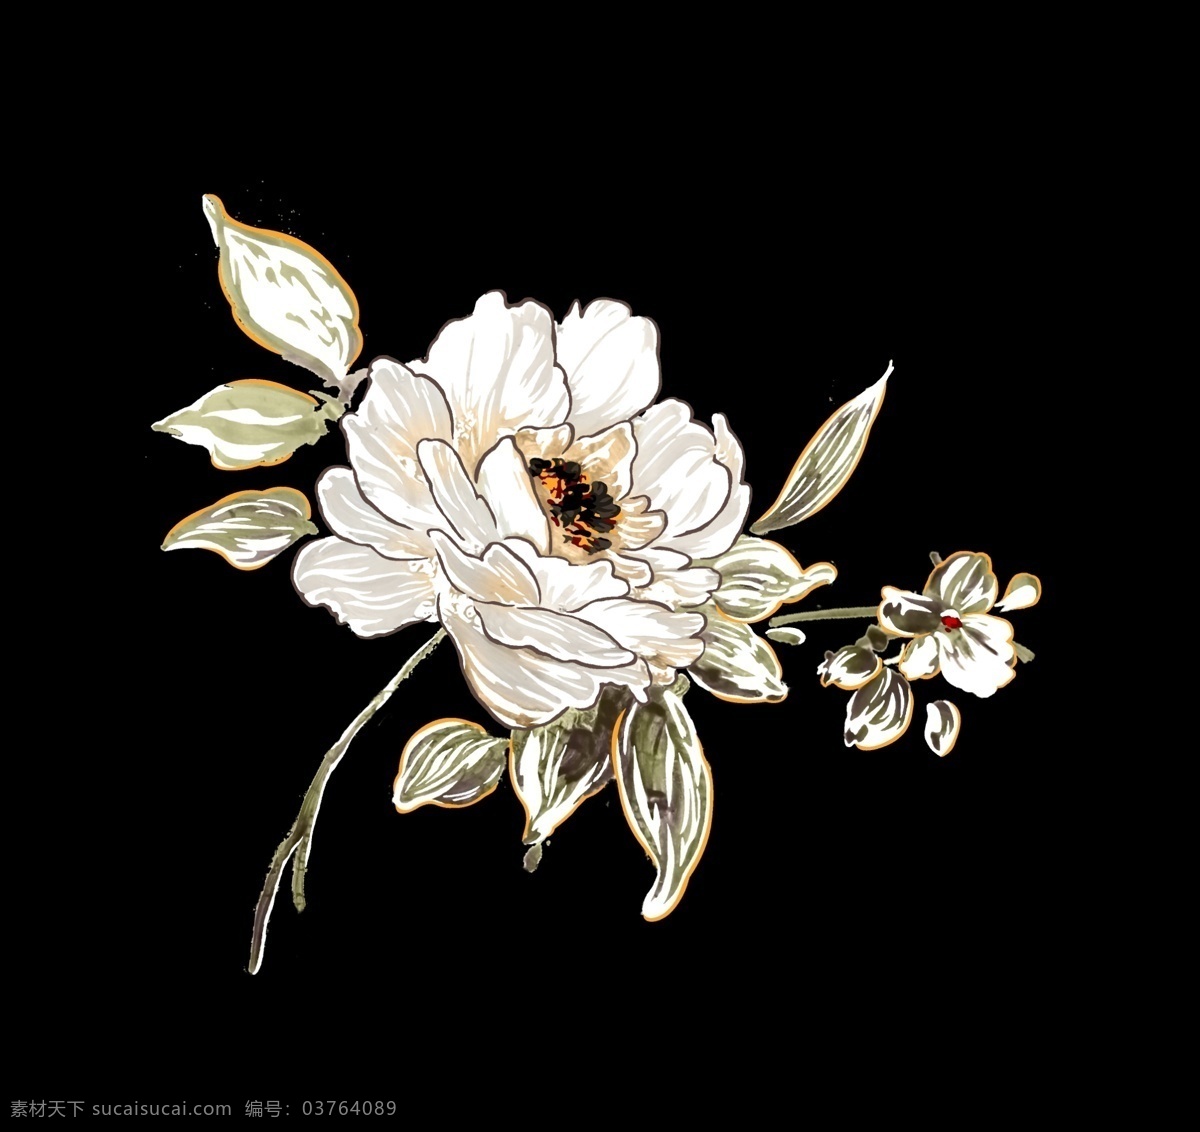 中国画 花卉图片 抽象花 手绘花 中国画花卉 水彩花卉 创意花卉 印花素材 高清 服装图案素材 家纺图案素材 花卉